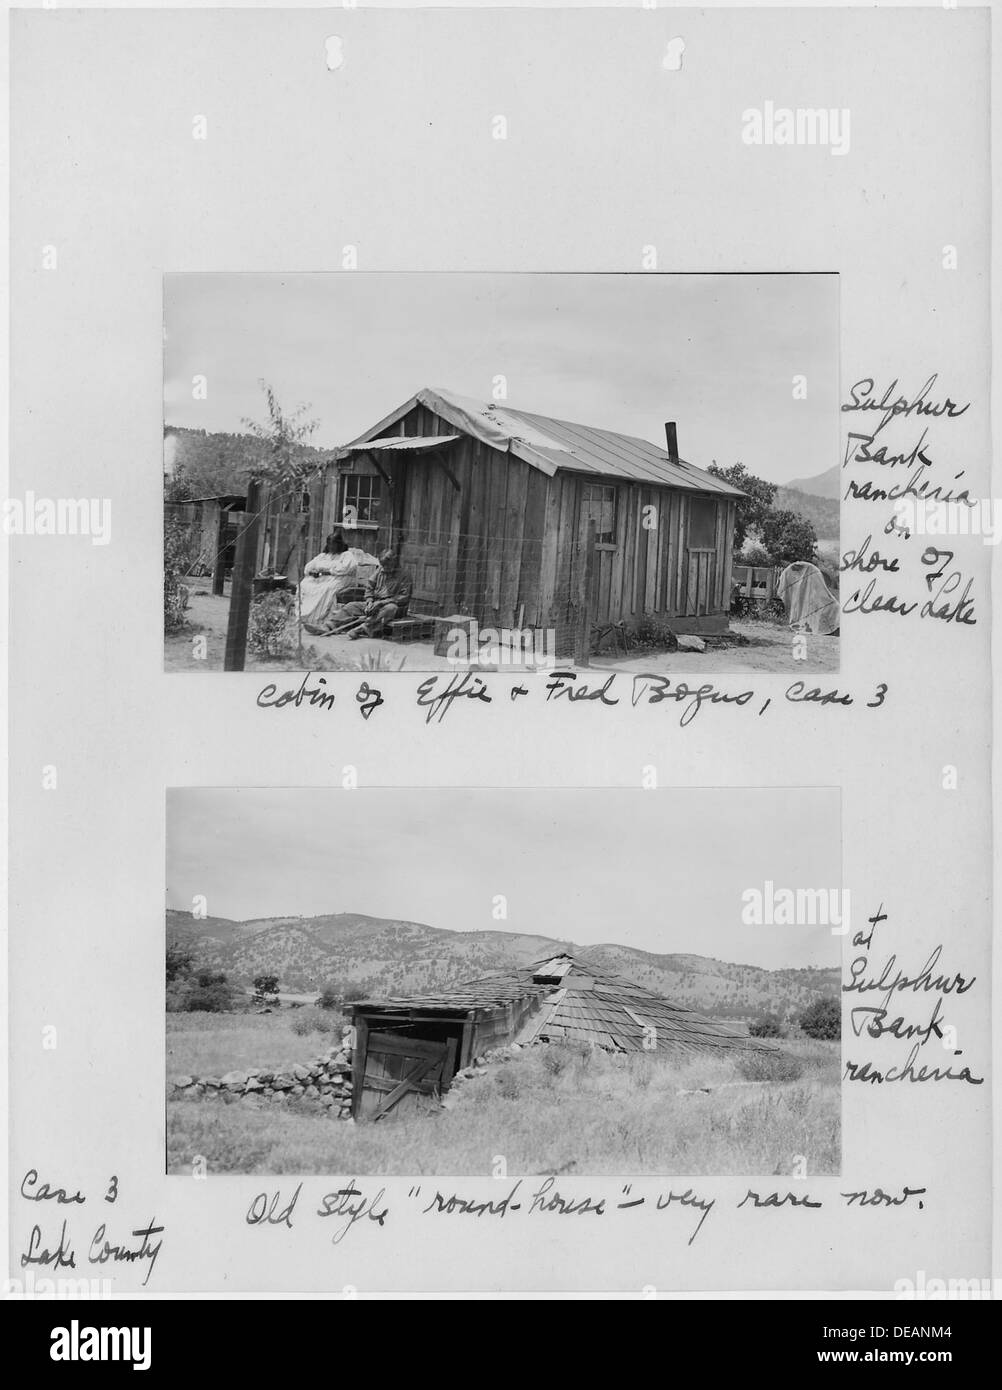 Fotos mit Bildunterschriften, Häuser am Schwefel Bank Rancheria, Lake County, Kalifornien, von Old Age Security 296277 Stockfoto